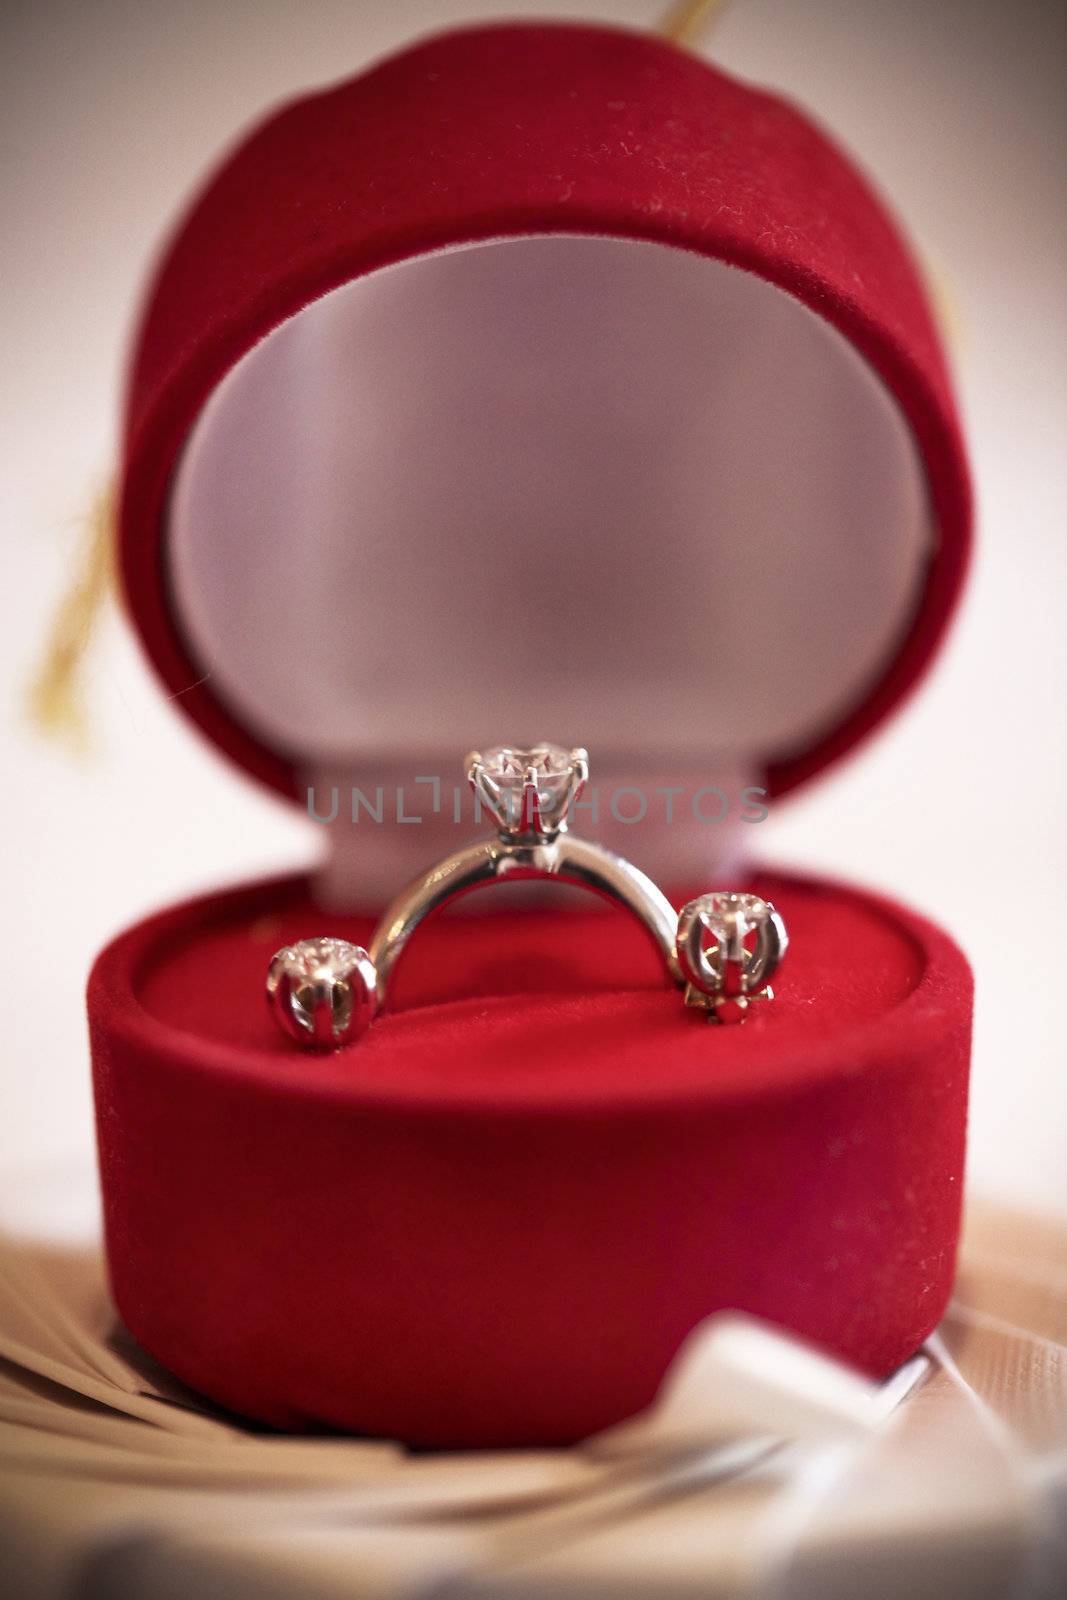 Wedding rings by andersonrise